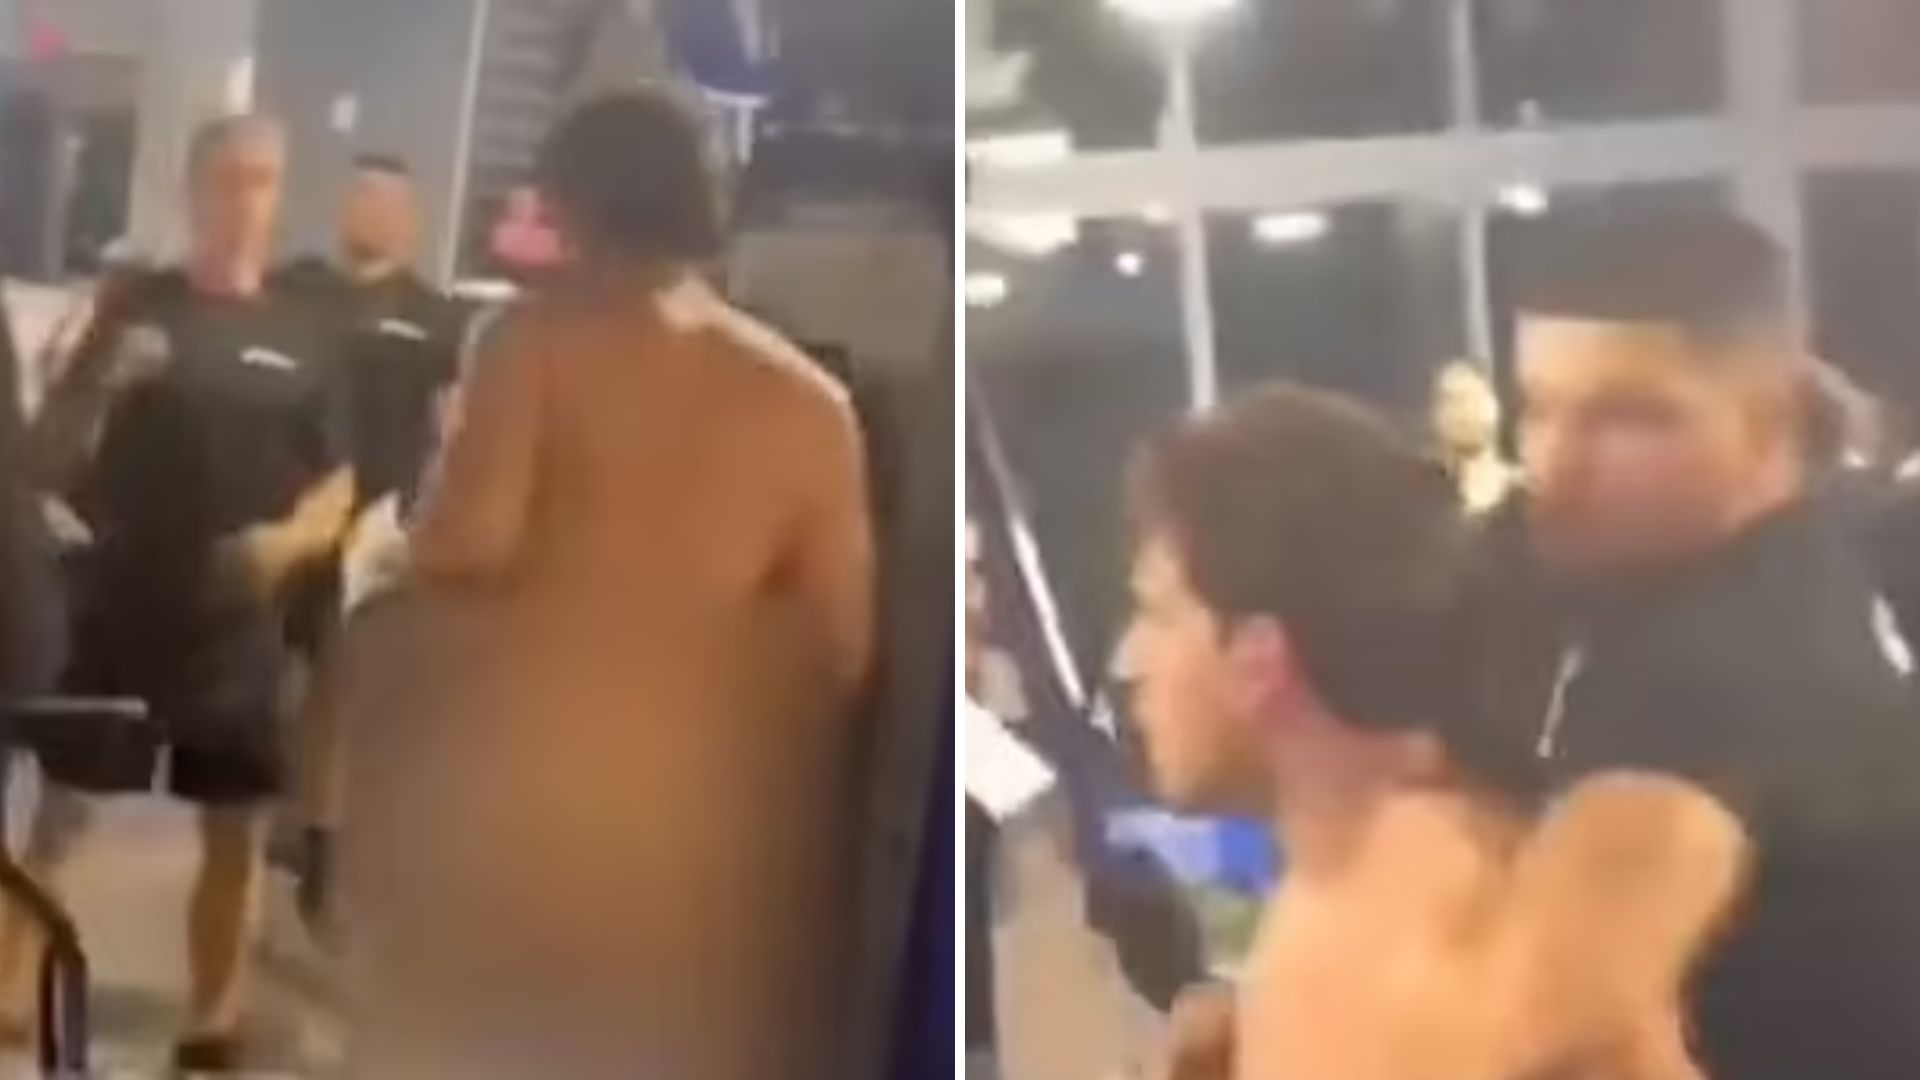 Homem fica nu em academia e faz série de agressões até ser preso - Foto: Reprodução/Twitter @ONLYinDADE